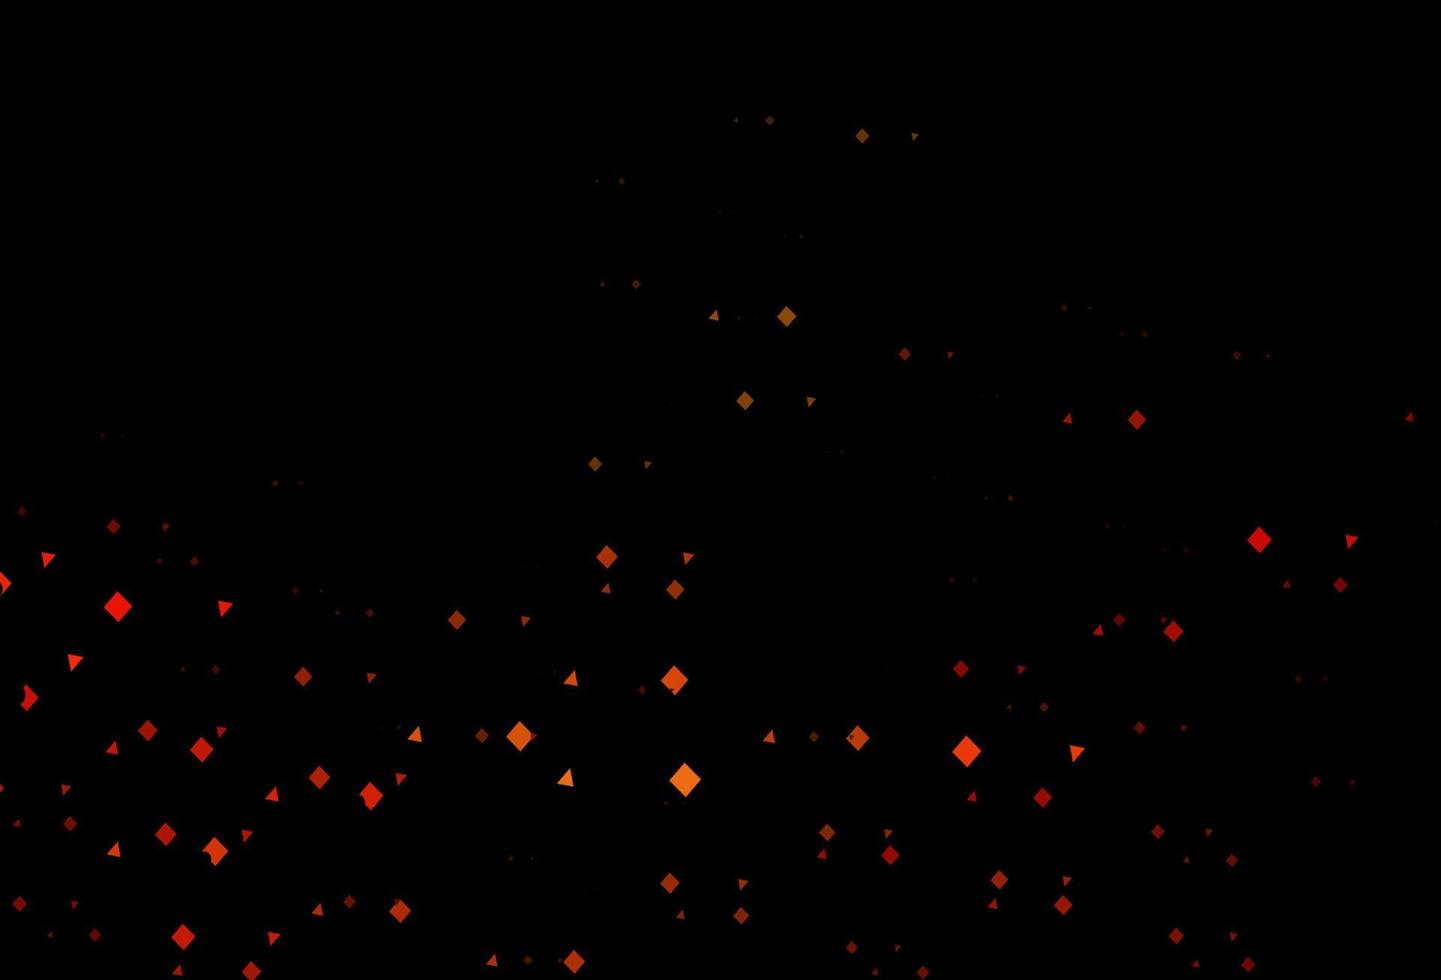 modello vettoriale arancione scuro in stile poligonale con cerchi.